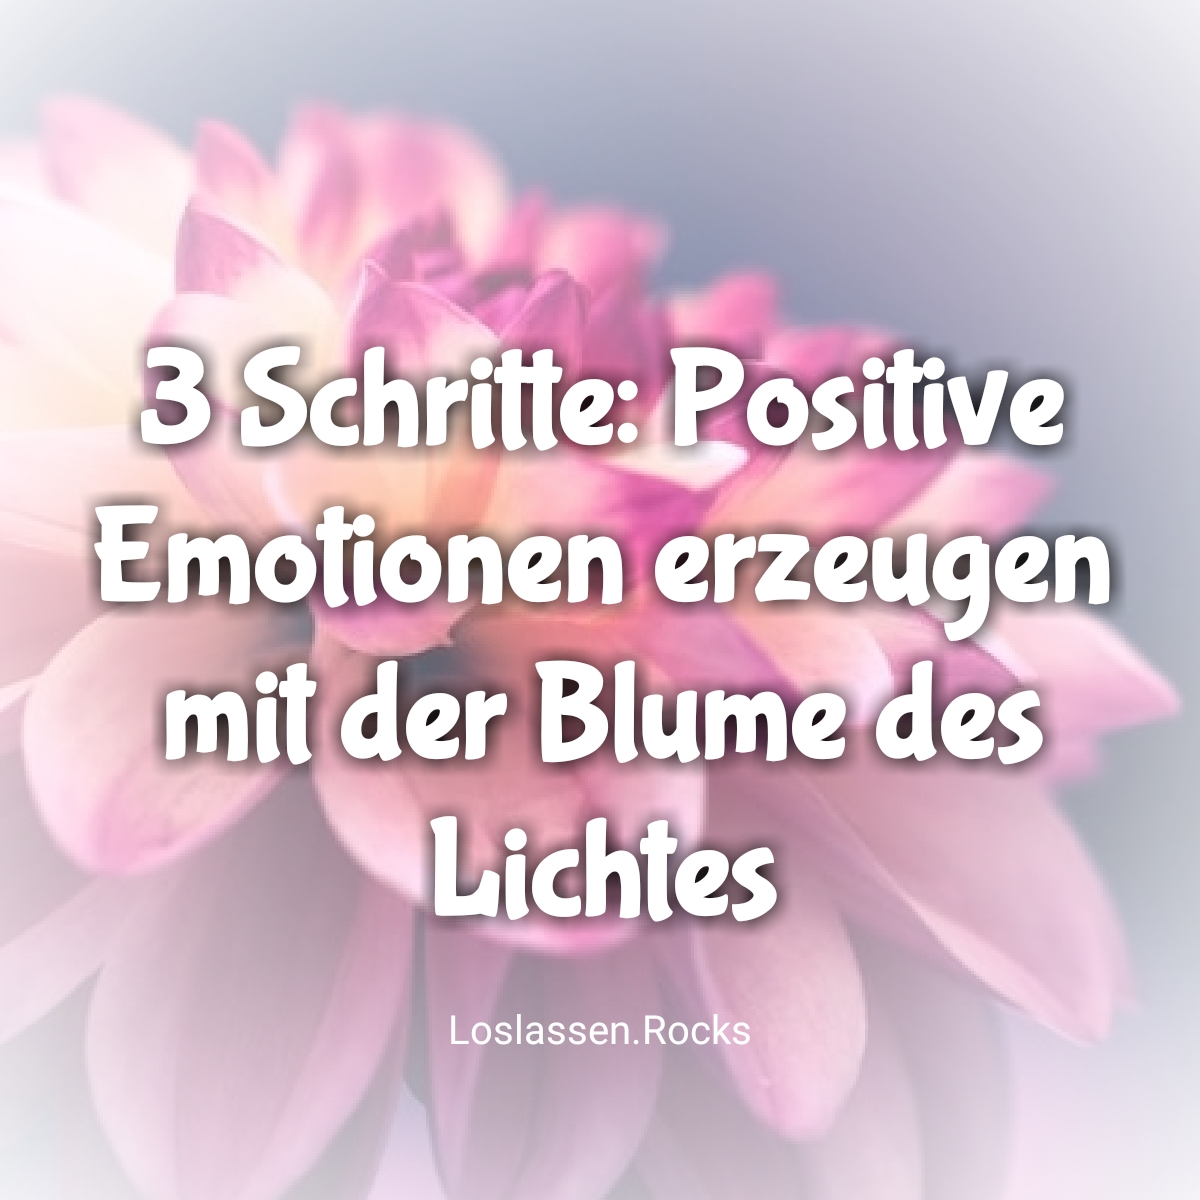 3 Schritte: Positive Emotionen erzeugen mit der Blume des Lichtes